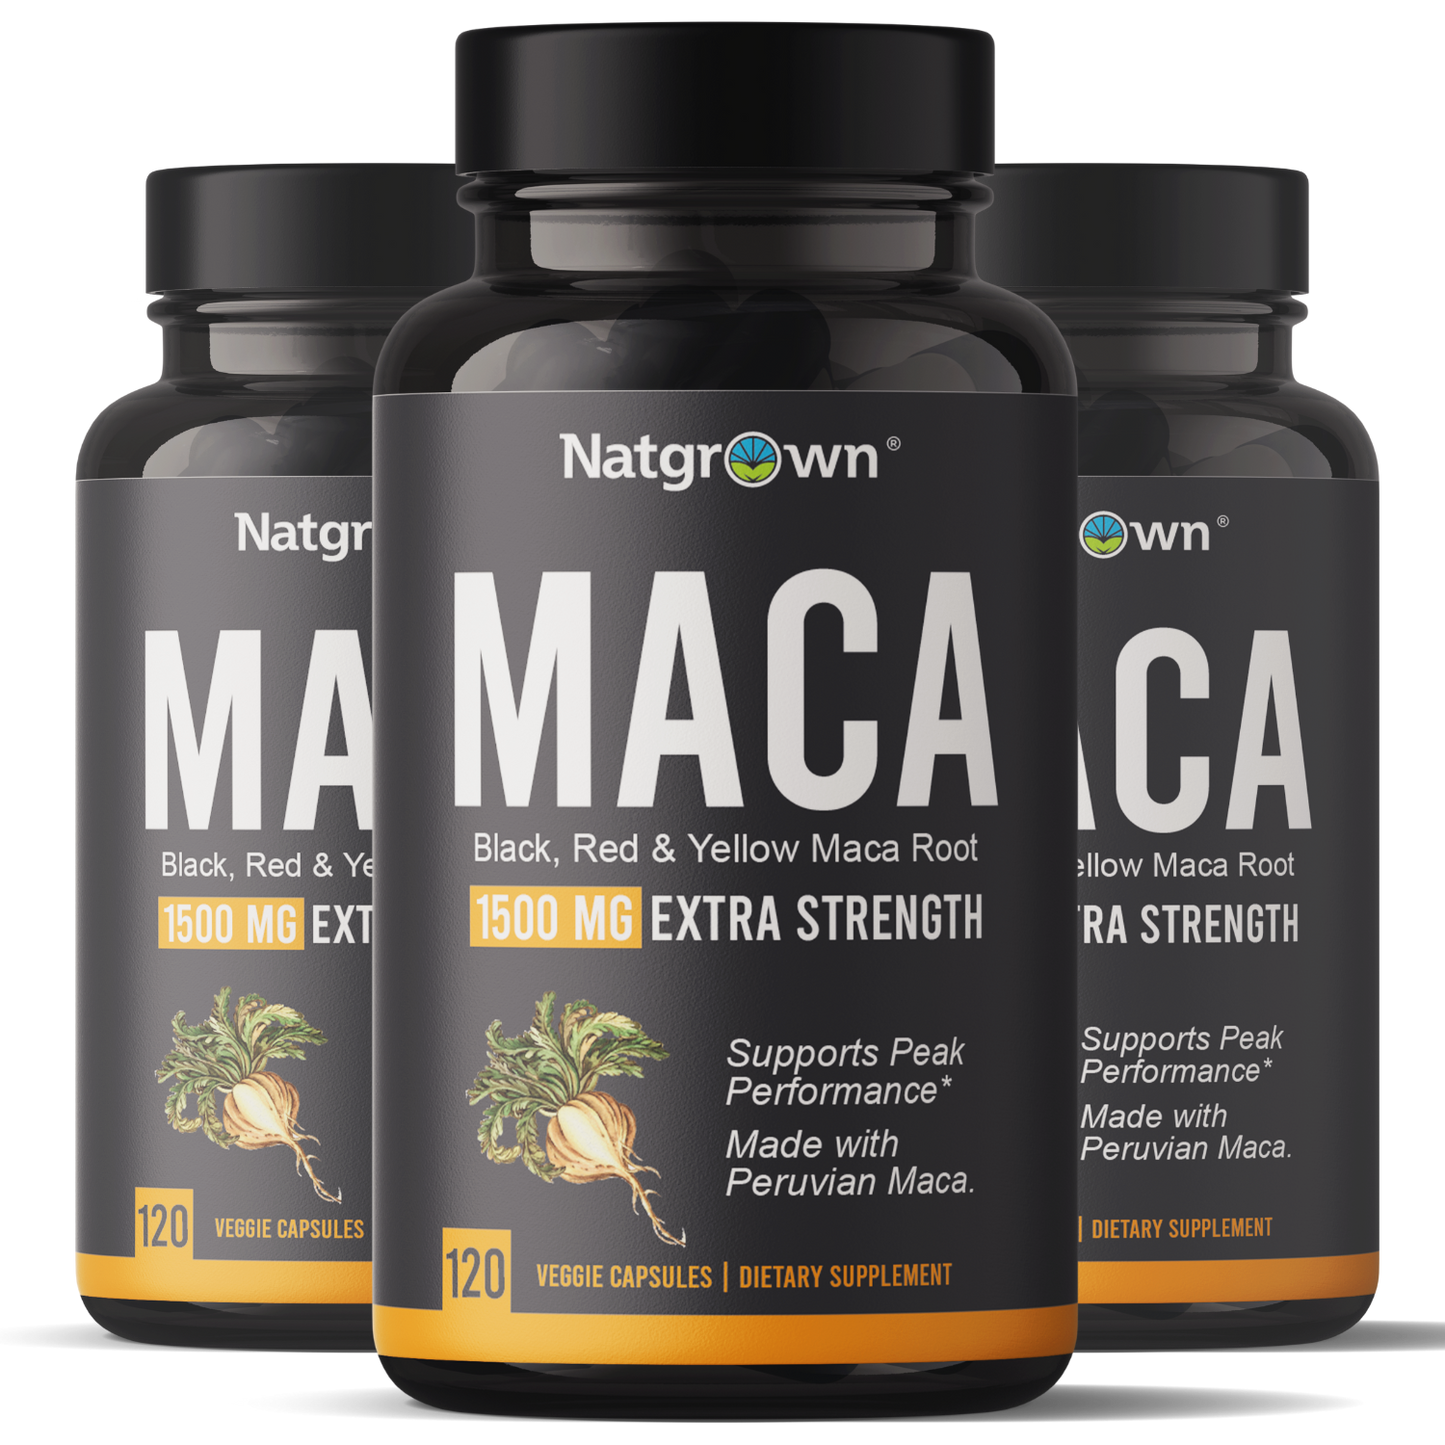 Natgrown Maca Root Capsules for Men and Women - 120 ct